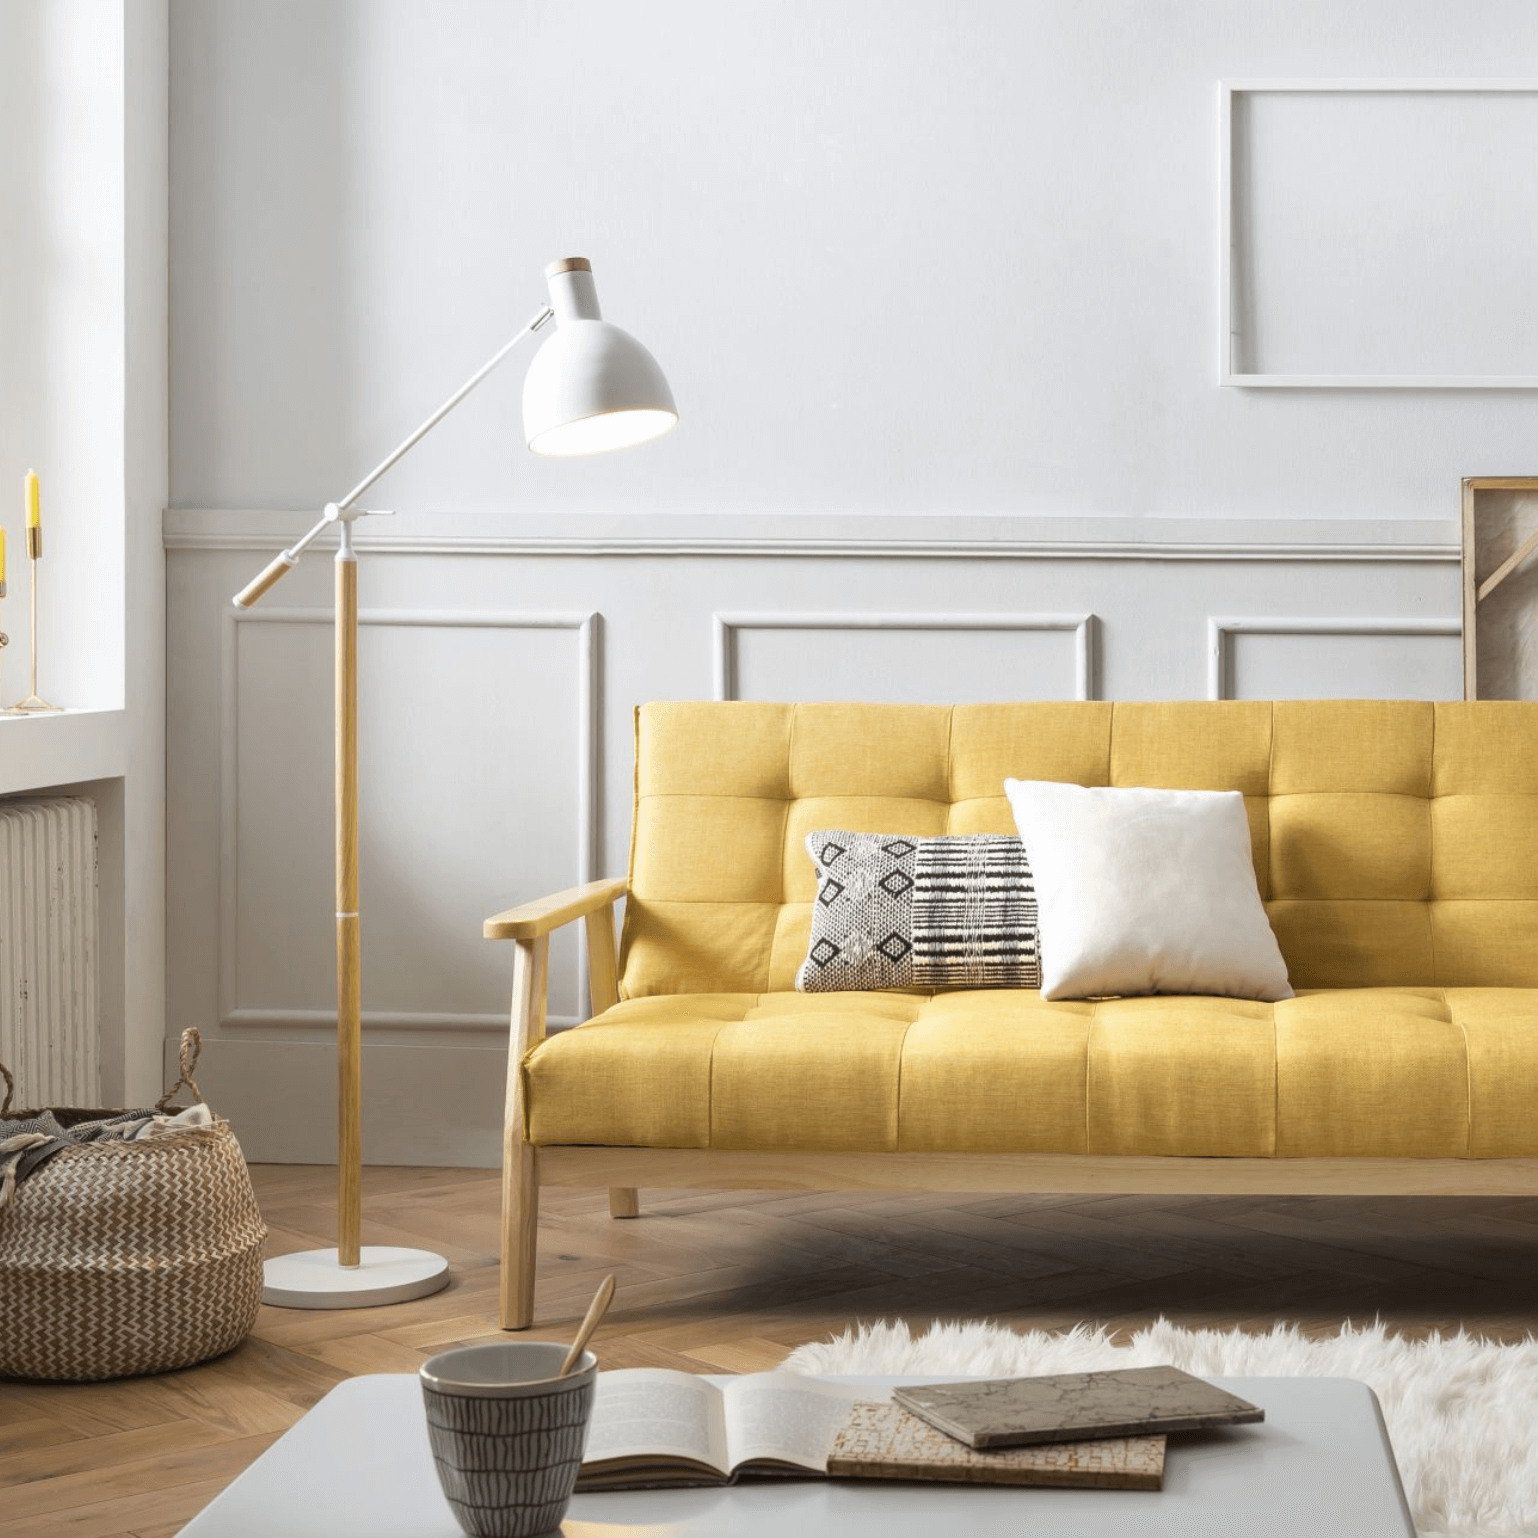 Canapé-lit 3 places SALESFEVER de style scandinave, couleur jaune moutarde, avec fonction relax, inclinable à 60